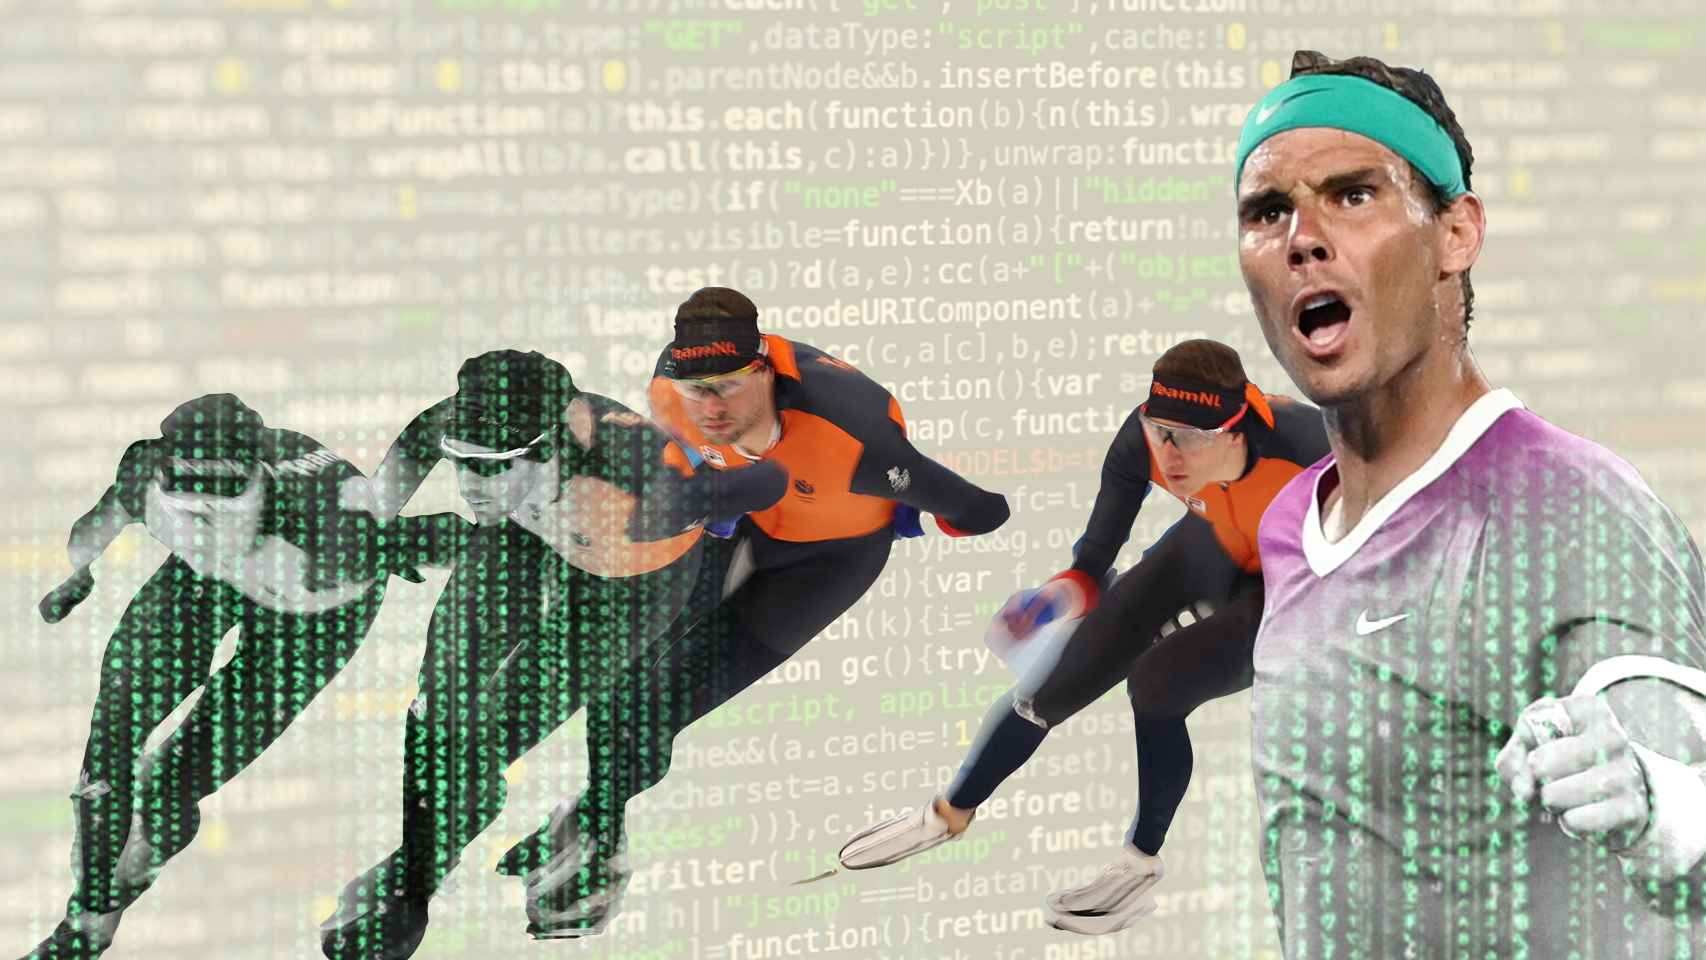 Por qué Países Bajos elige a sus patinadores con Big Data si Rafa Nadal derrotó a los superordenadores